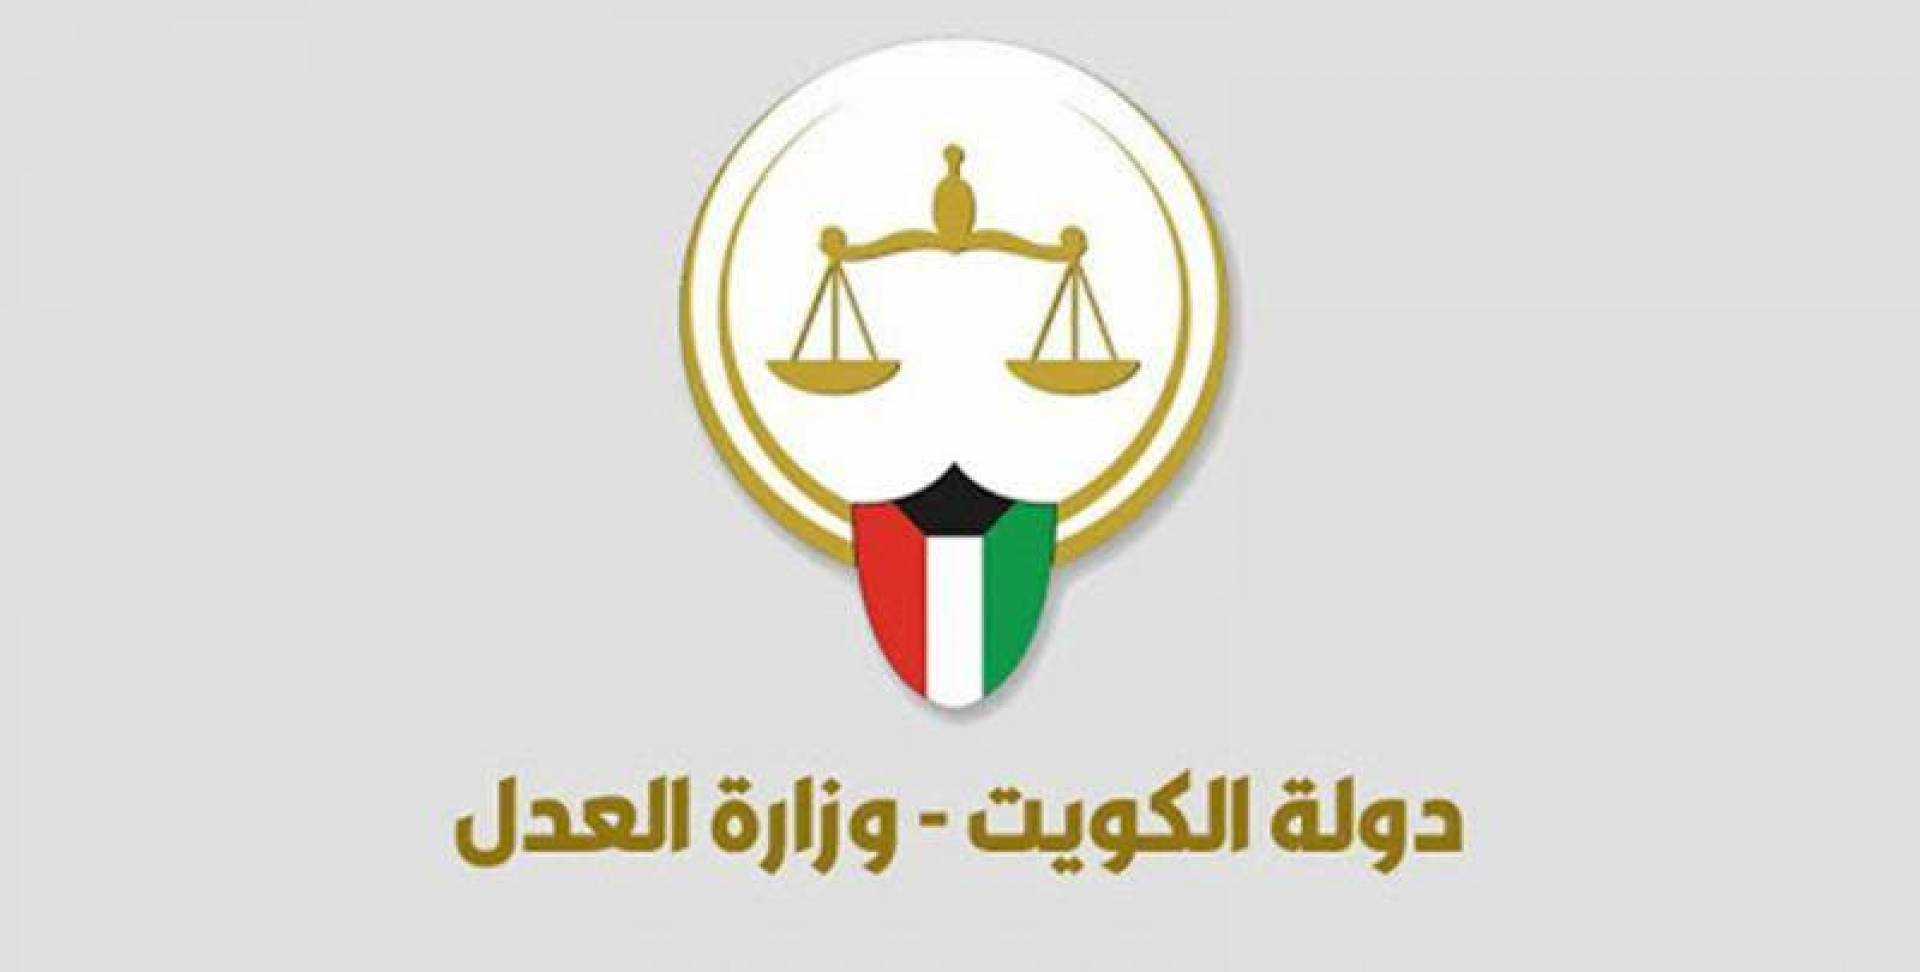 رابط حجز موعد وزارة العدل الكويتية برج التحرير metaprodapp.azurewebsites.net